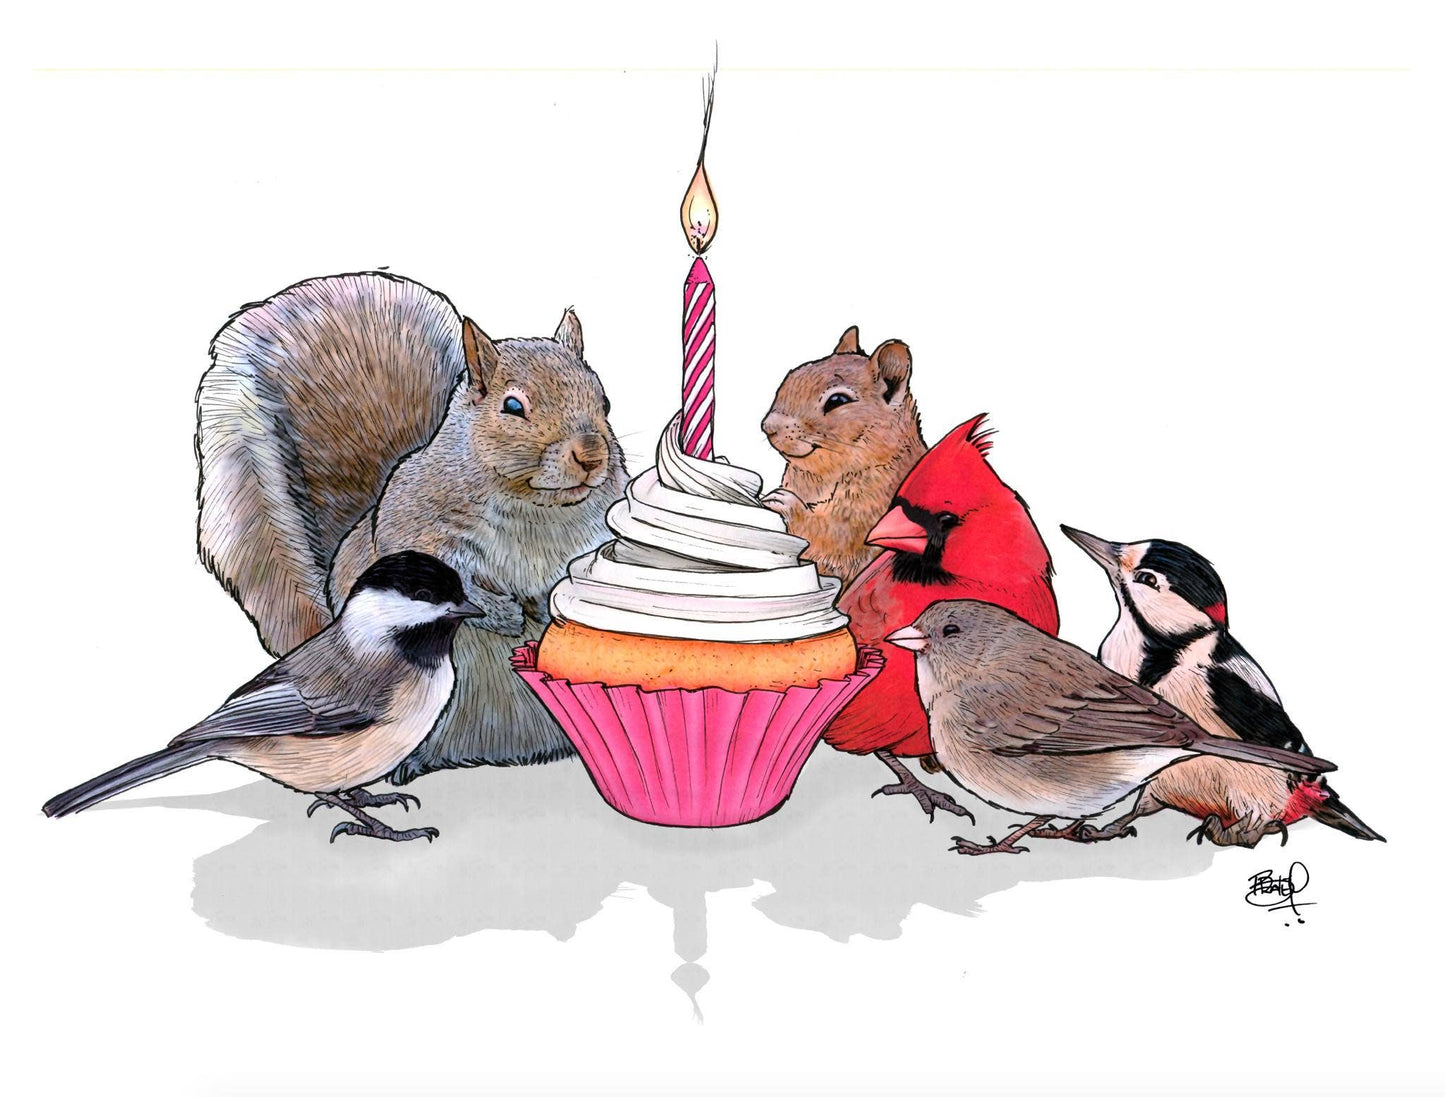 Birthday Wish Greeting Card (blank inside) by Shawn Braley Illustration